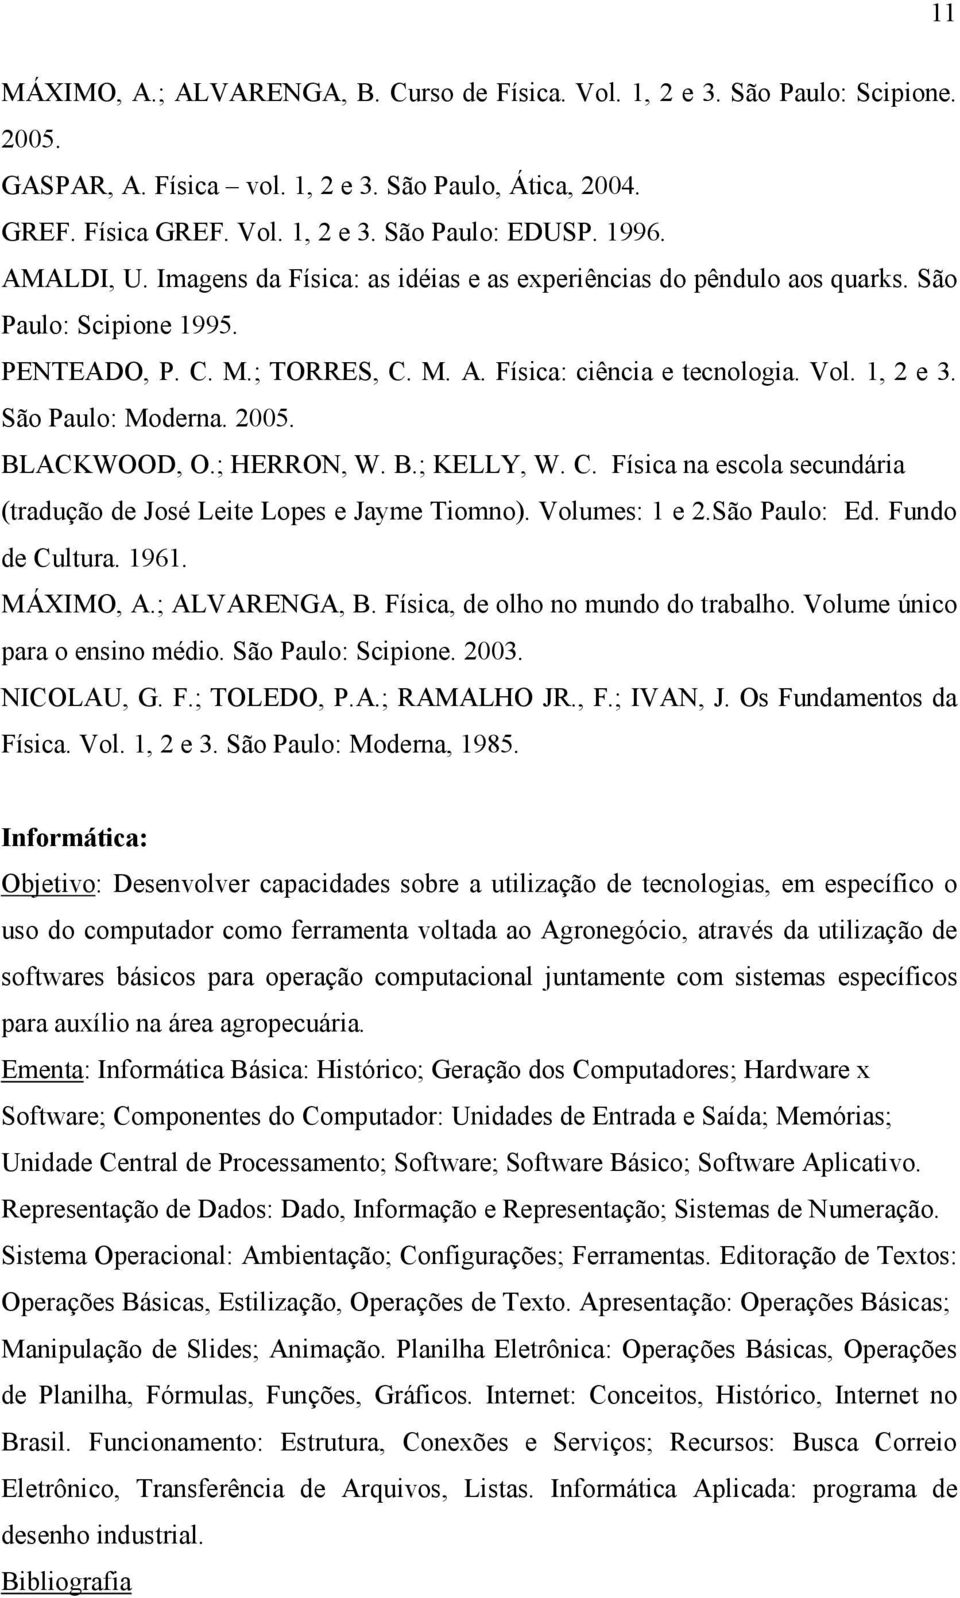 São Paulo: Moderna. 2005. BLACKWOOD, O.; HERRON, W. B.; KELLY, W. C. Física na escola secundária (tradução de José Leite Lopes e Jayme Tiomno). Volumes: 1 e 2.São Paulo: Ed. Fundo de Cultura. 1961.